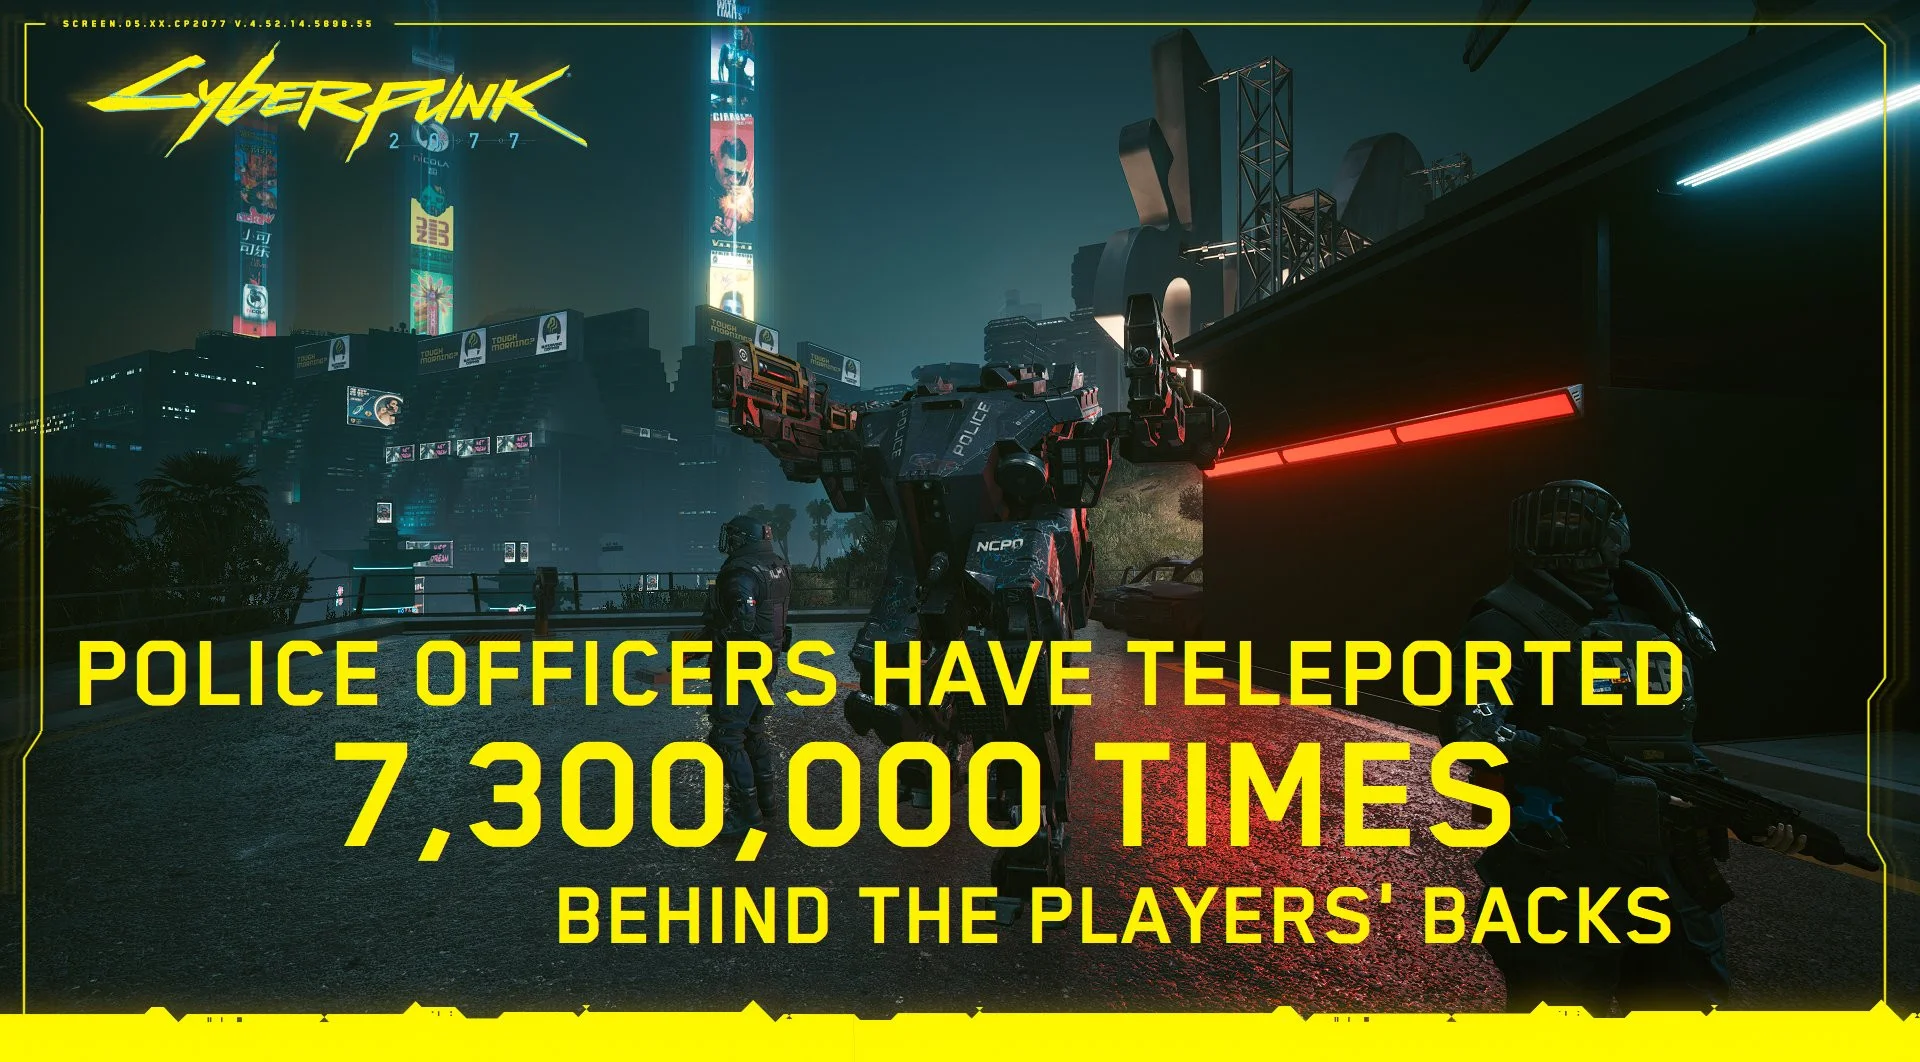 «0% игроков воспользовались метро»: в сети высмеяли статистику Cyberpunk 2077 - фото 1